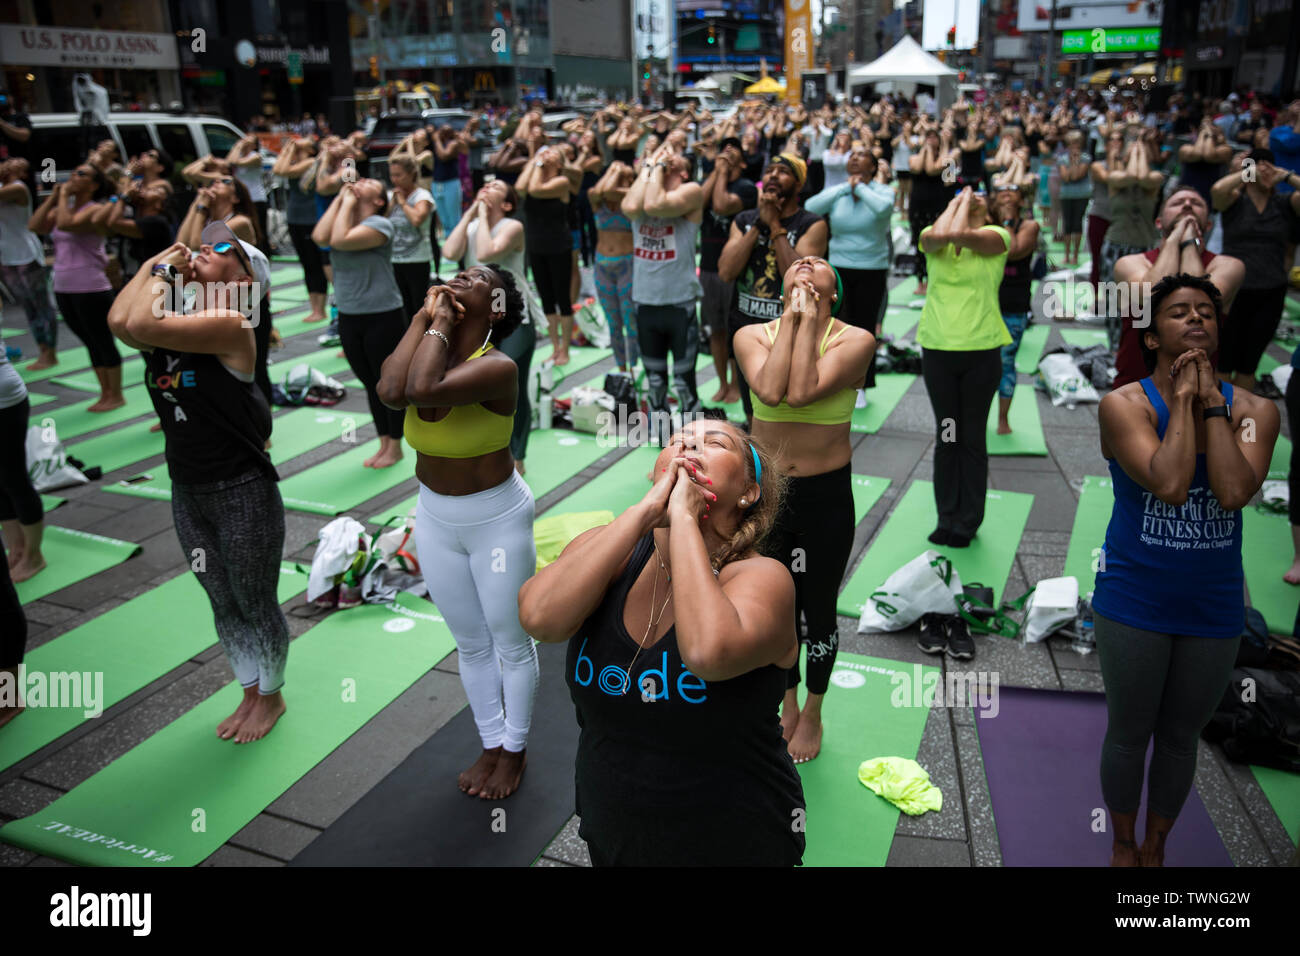 New York, USA. Juni, 2019 21. Menschen die Teilnahme an einem kostenlosen Yoga Klasse bei Solstice am Times Square in New York, USA, 21. Juni 2019. Den ganzen Tag über Yoga Veranstaltung feierte der längste Tag der nördlichen Hemisphäre des Jahres und dem Beginn der Sommersaison. Quelle: Michael Nagle/Xinhua/Alamy leben Nachrichten Stockfoto